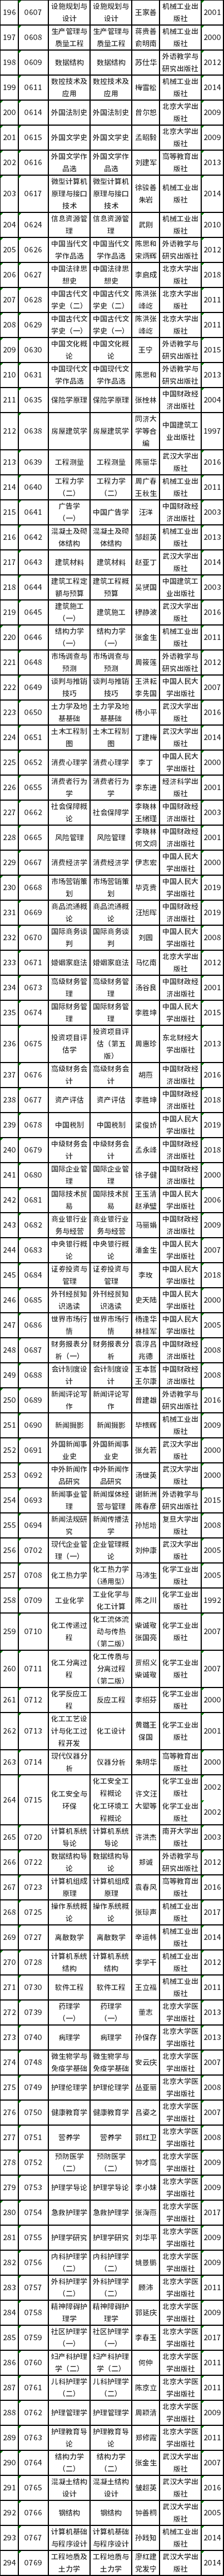 天津市2022年高等教育自学考试课程使用教材表